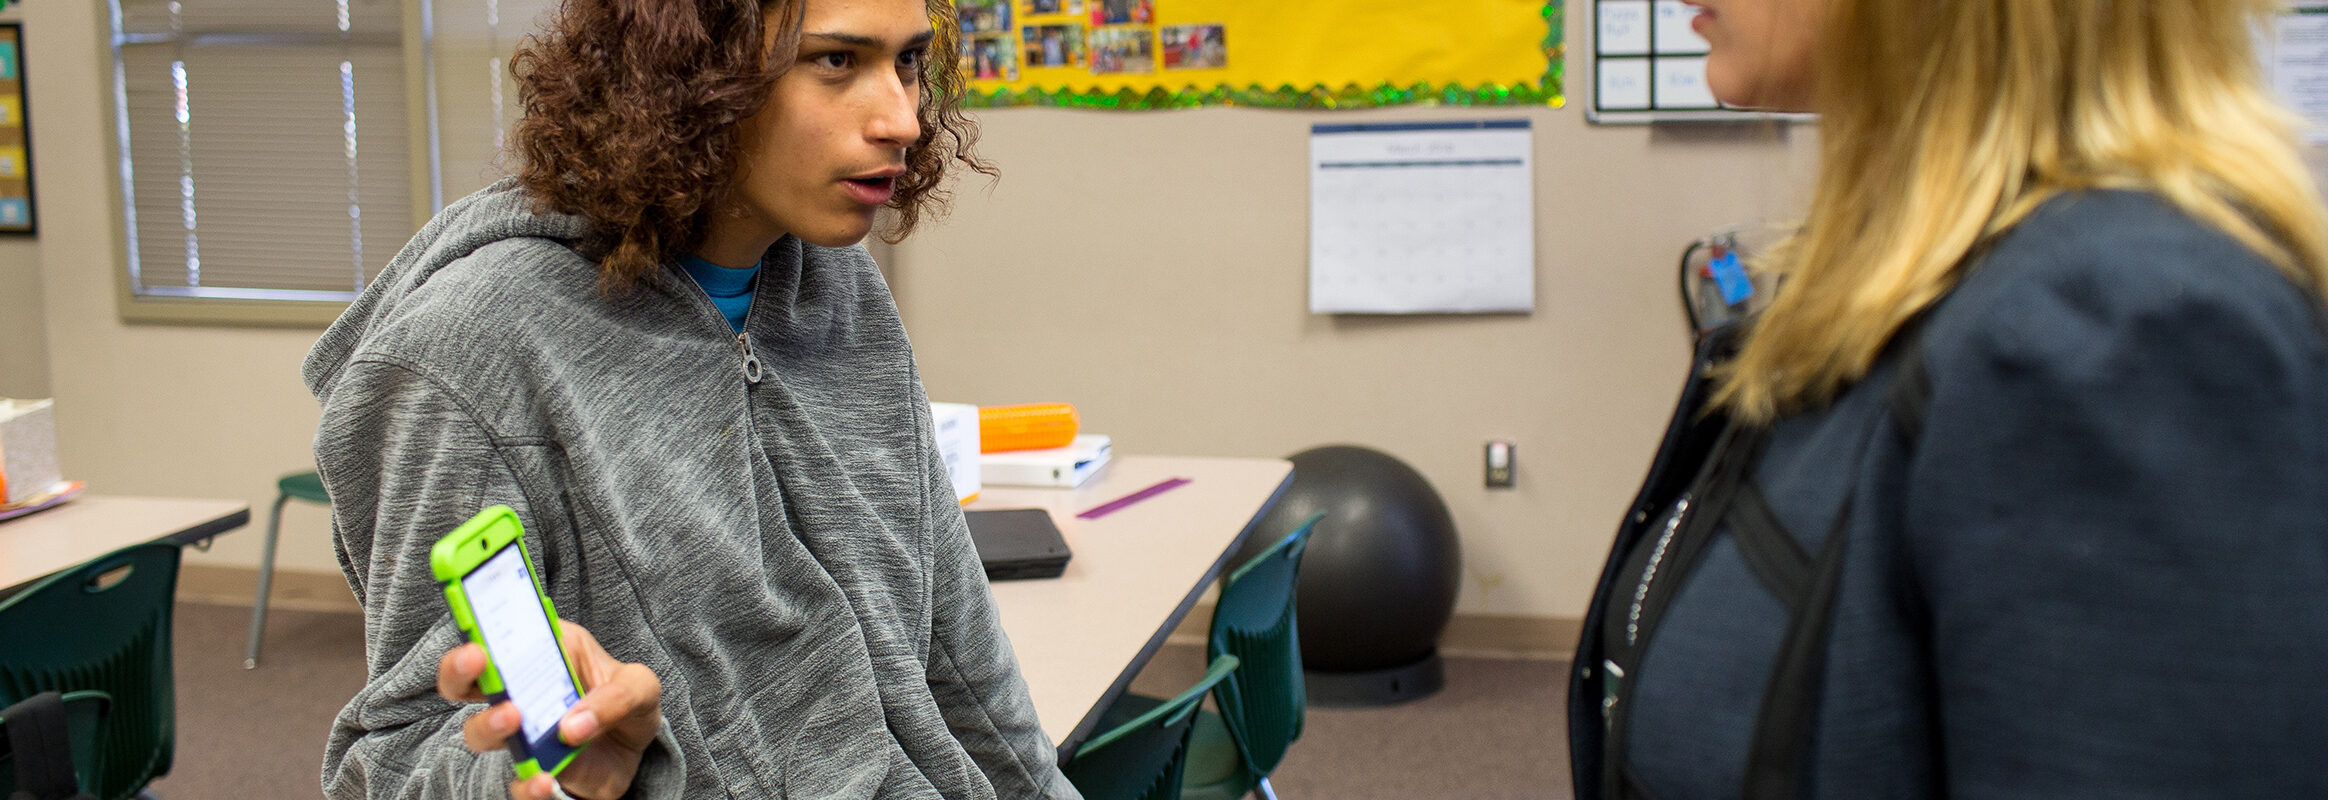 Adolescent montrant un iPhone avec un texte à un enseignant en classe